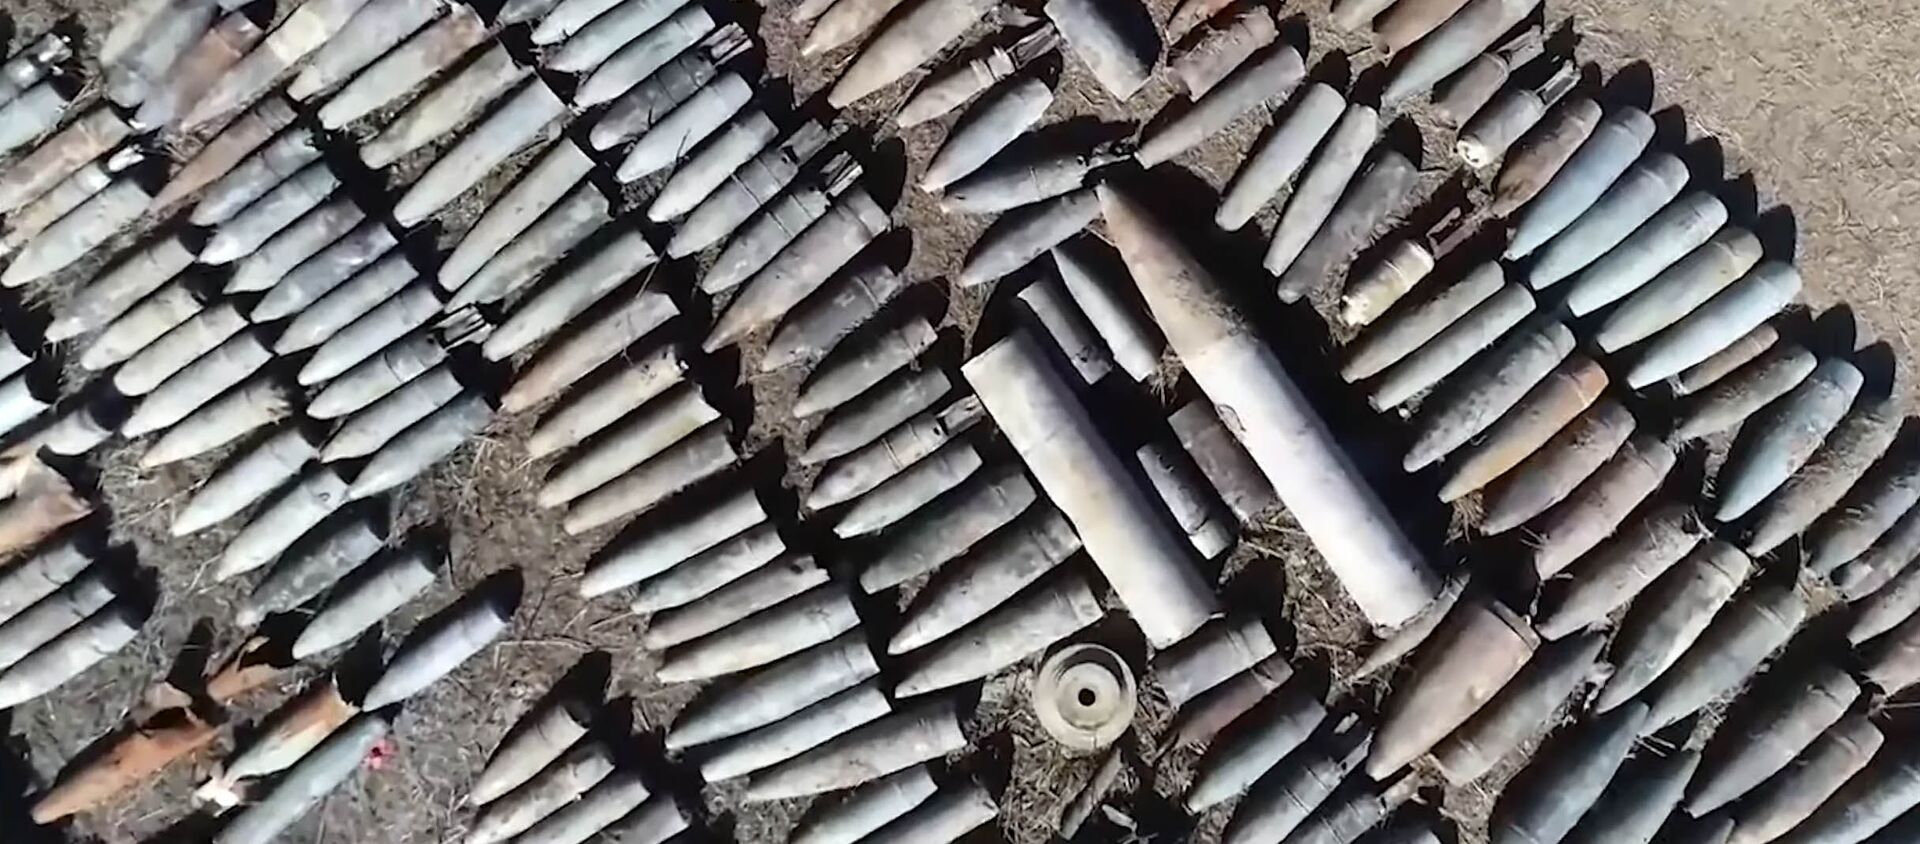 Тизилген жан алгычтар. Карабахтын аянтын жарылуучу заттардан тазалаган видео - Sputnik Кыргызстан, 1920, 11.01.2021